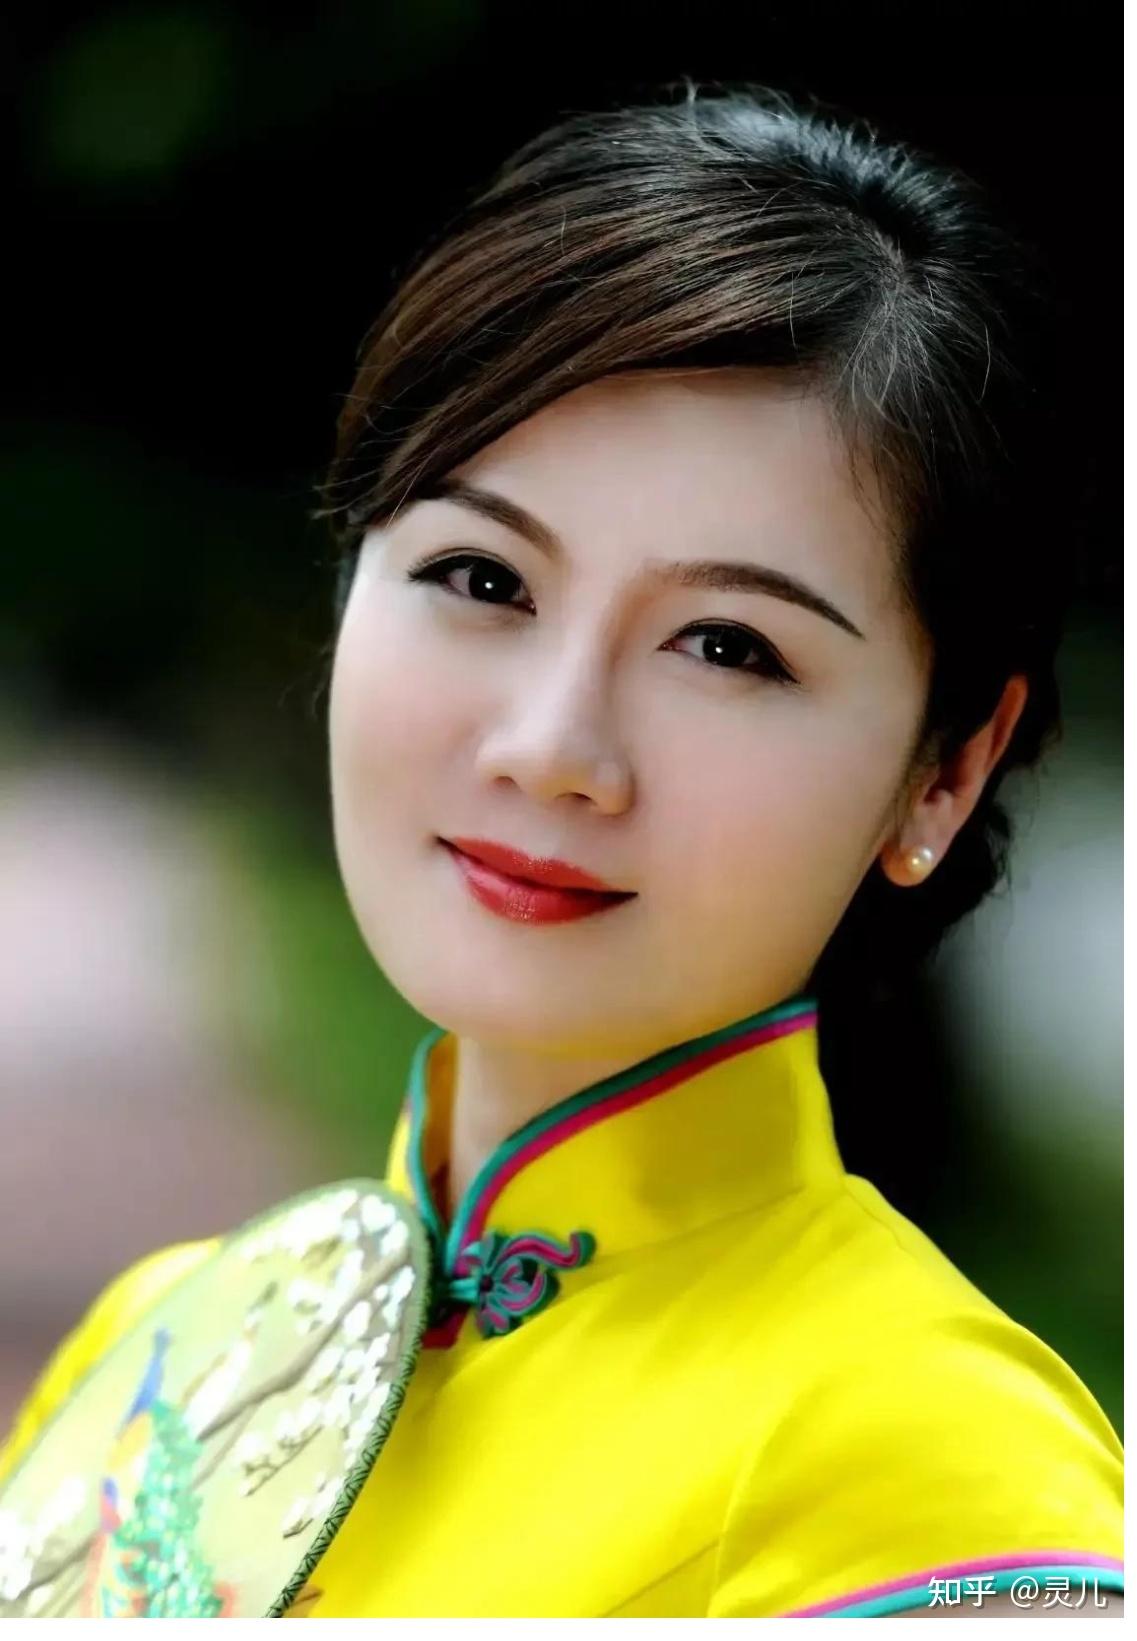 越南裙衩（2）[60P]|MM 写真 - 武当休闲山庄 - 稳定,和谐,人性化的中文社区